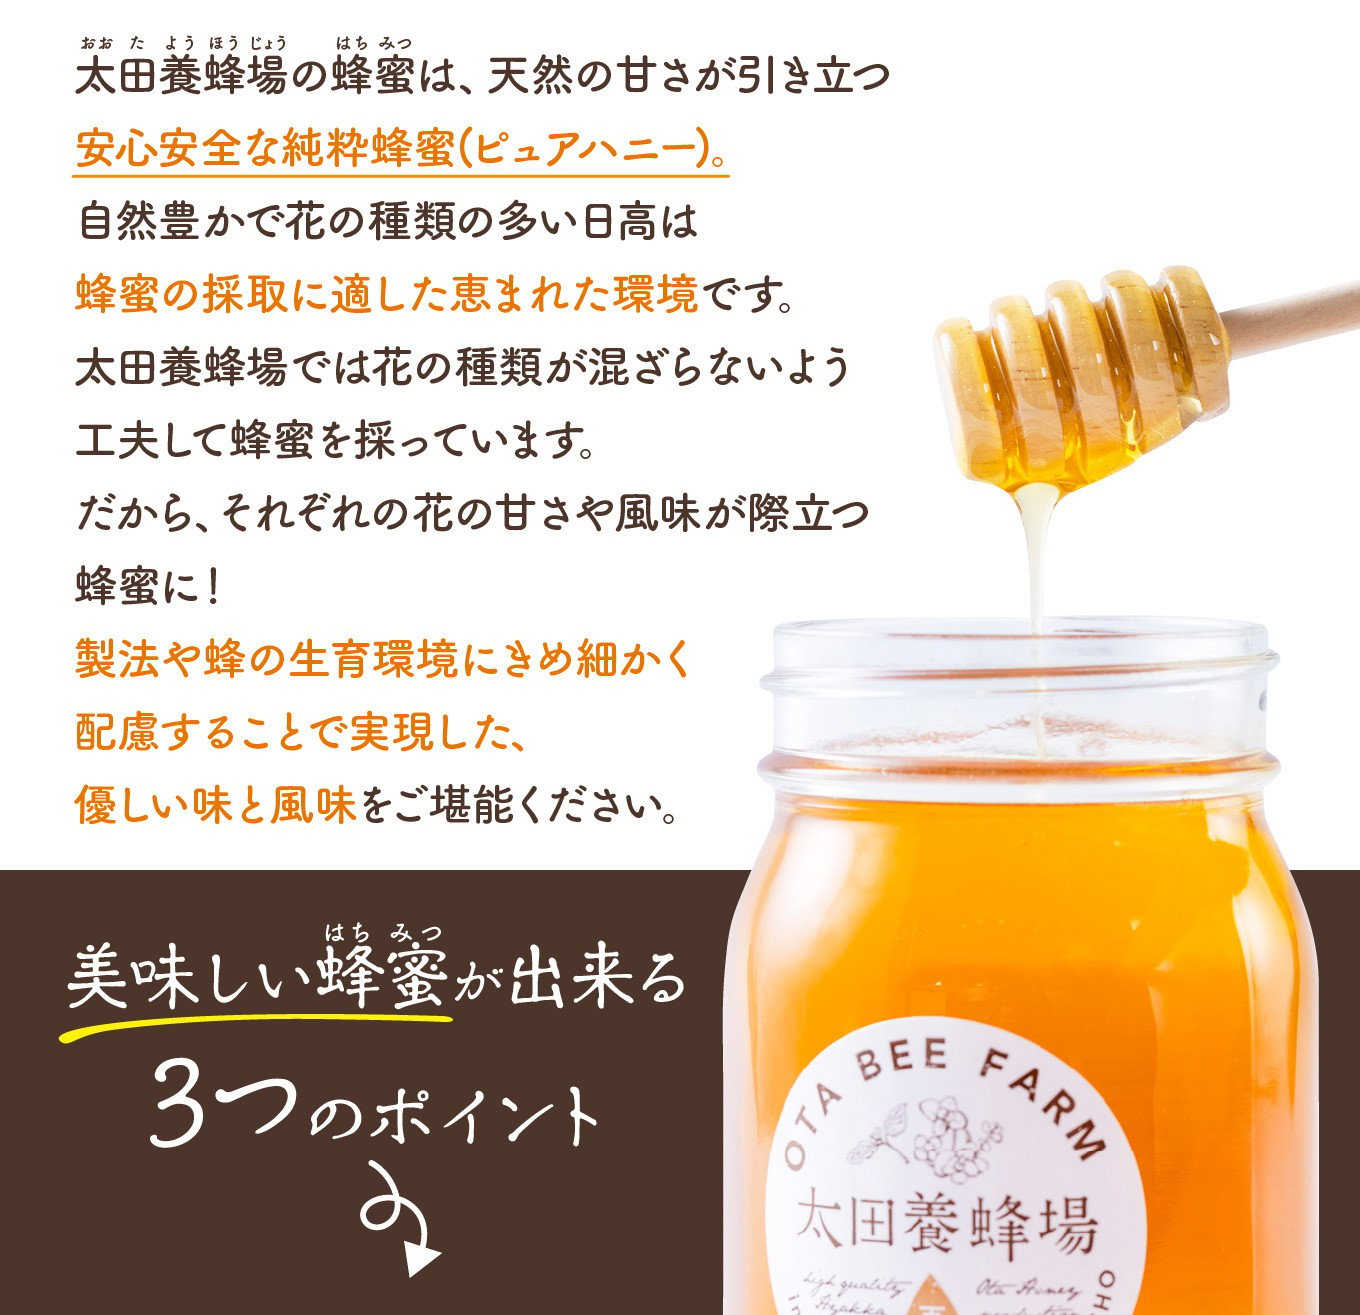 はちみつ 国産 エコパック 神戸養蜂場 非加熱 選べるお試しセット 90g 5袋 外国産 ハチミツ 蜂蜜